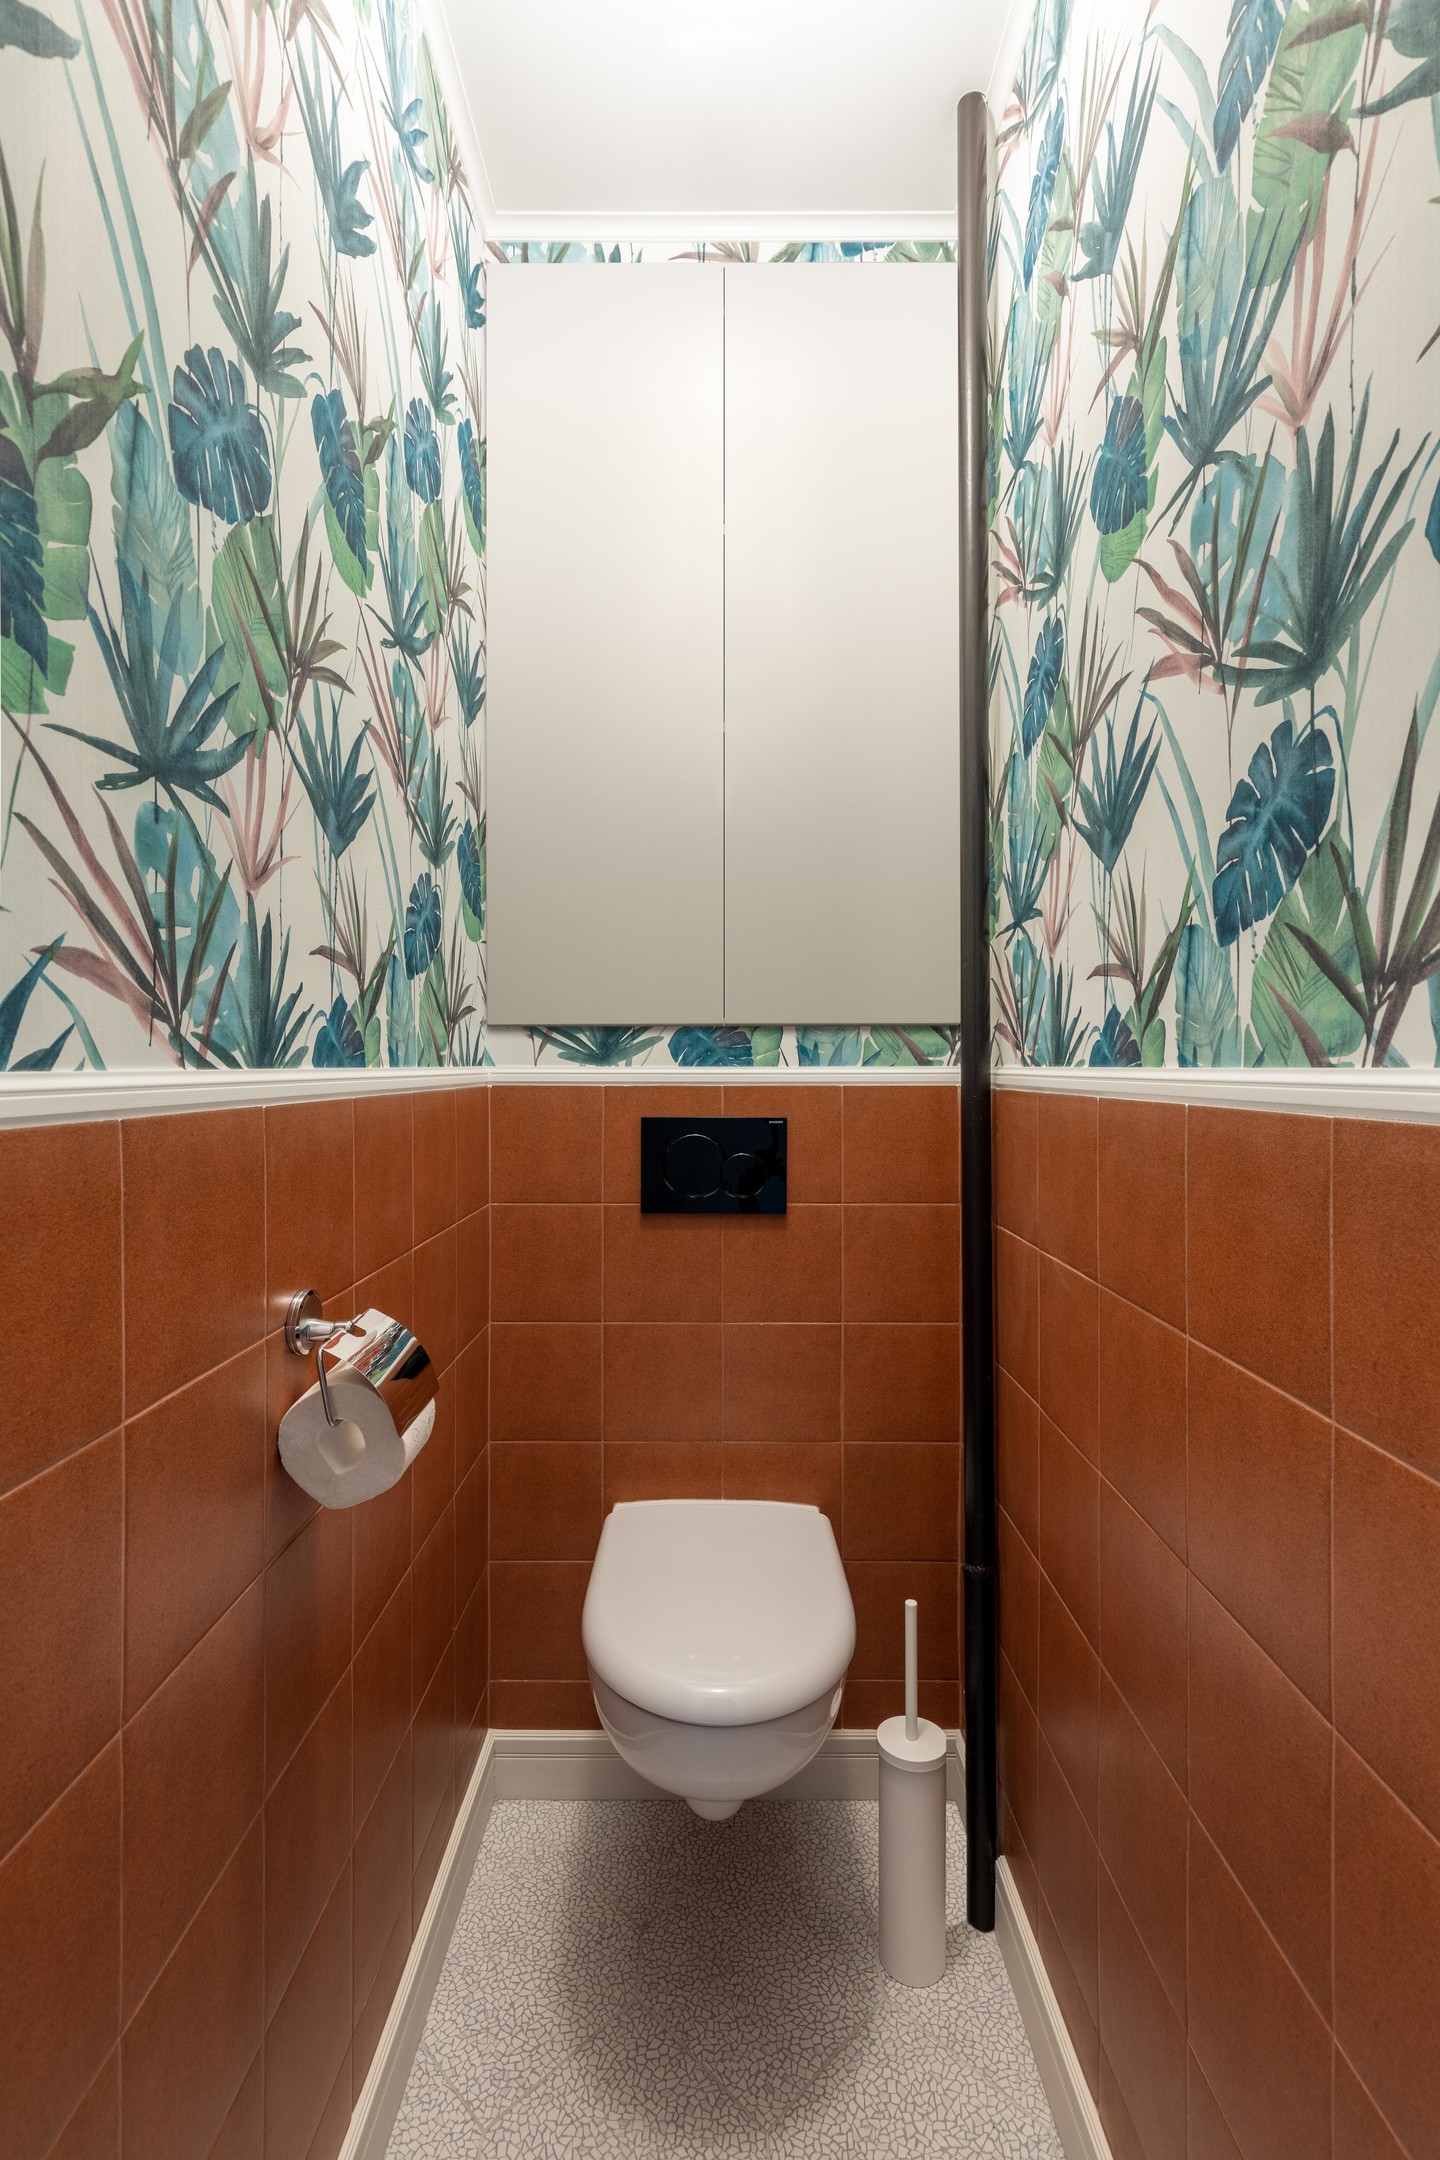 Giấy dán tường tiếp tục phát huy vẻ đẹp trong nhà vệ sinh, với phân nửa bức tường ốp gạch màu đất nung, nửa còn lại là họa tiết tropical sống động. Bồn cầu gắn tường cũng giúp tiết kiệm diện tích và vệ sinh dễ dàng hơn.